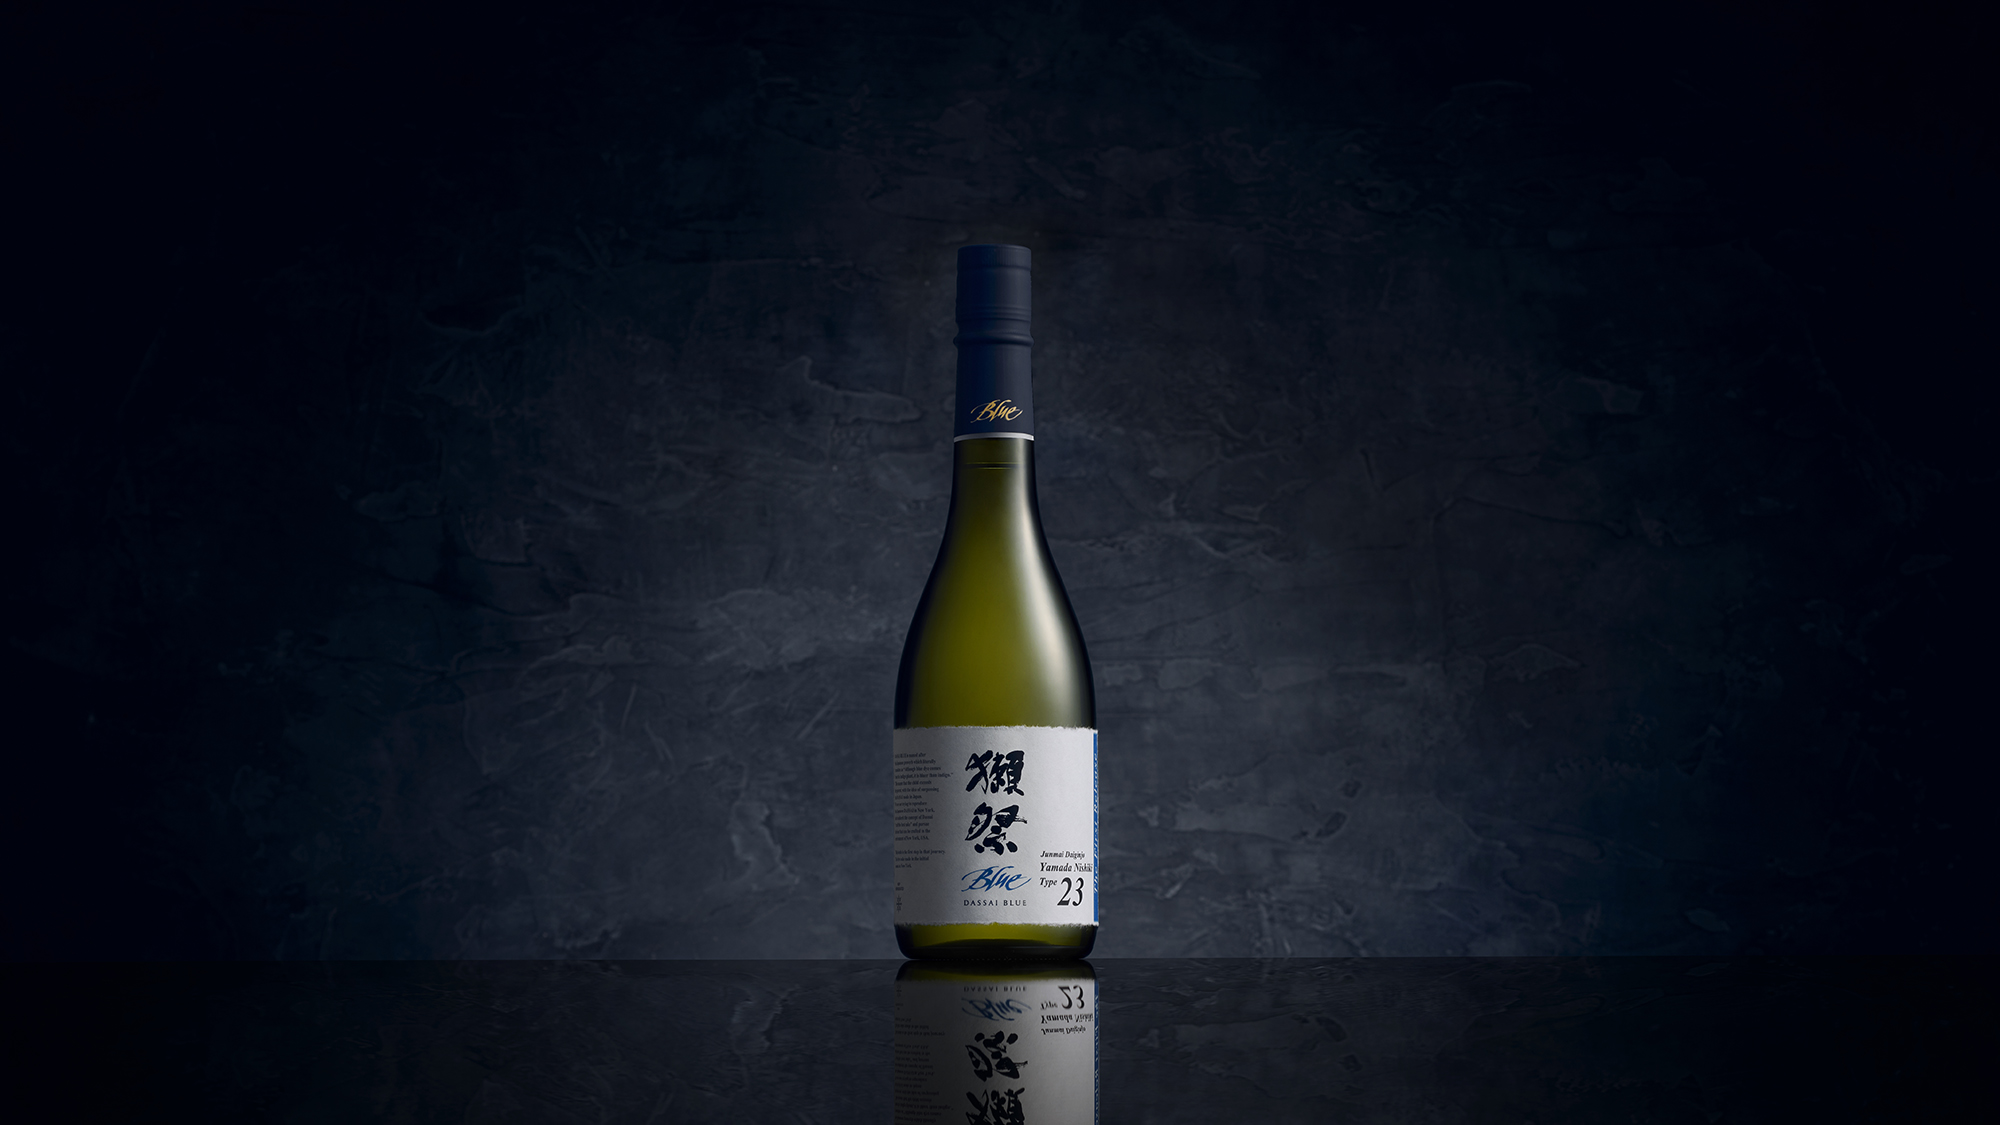 Dassai Blue Debuts Type 23 Sake In Hudson Valley